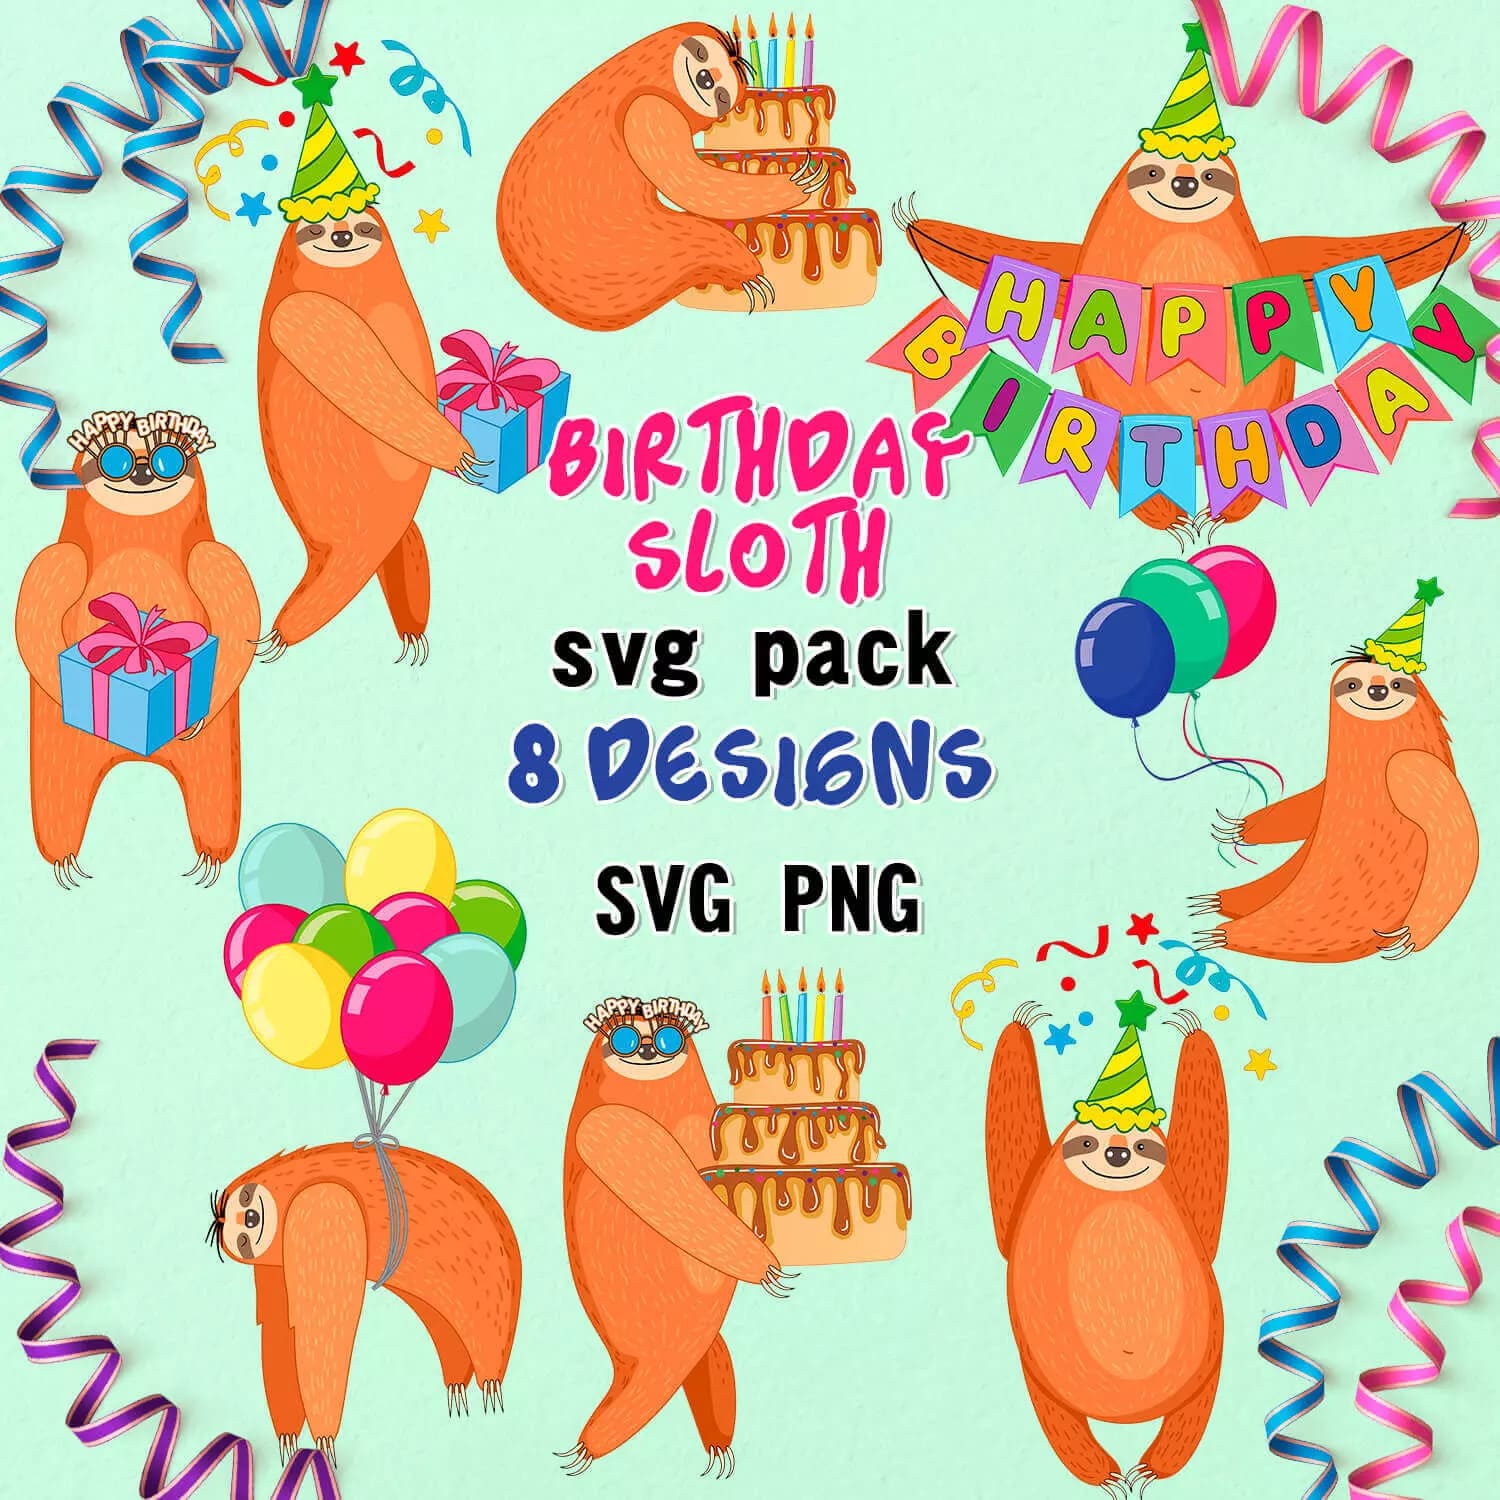 Birthday sloth svg pack 8 designs svg.